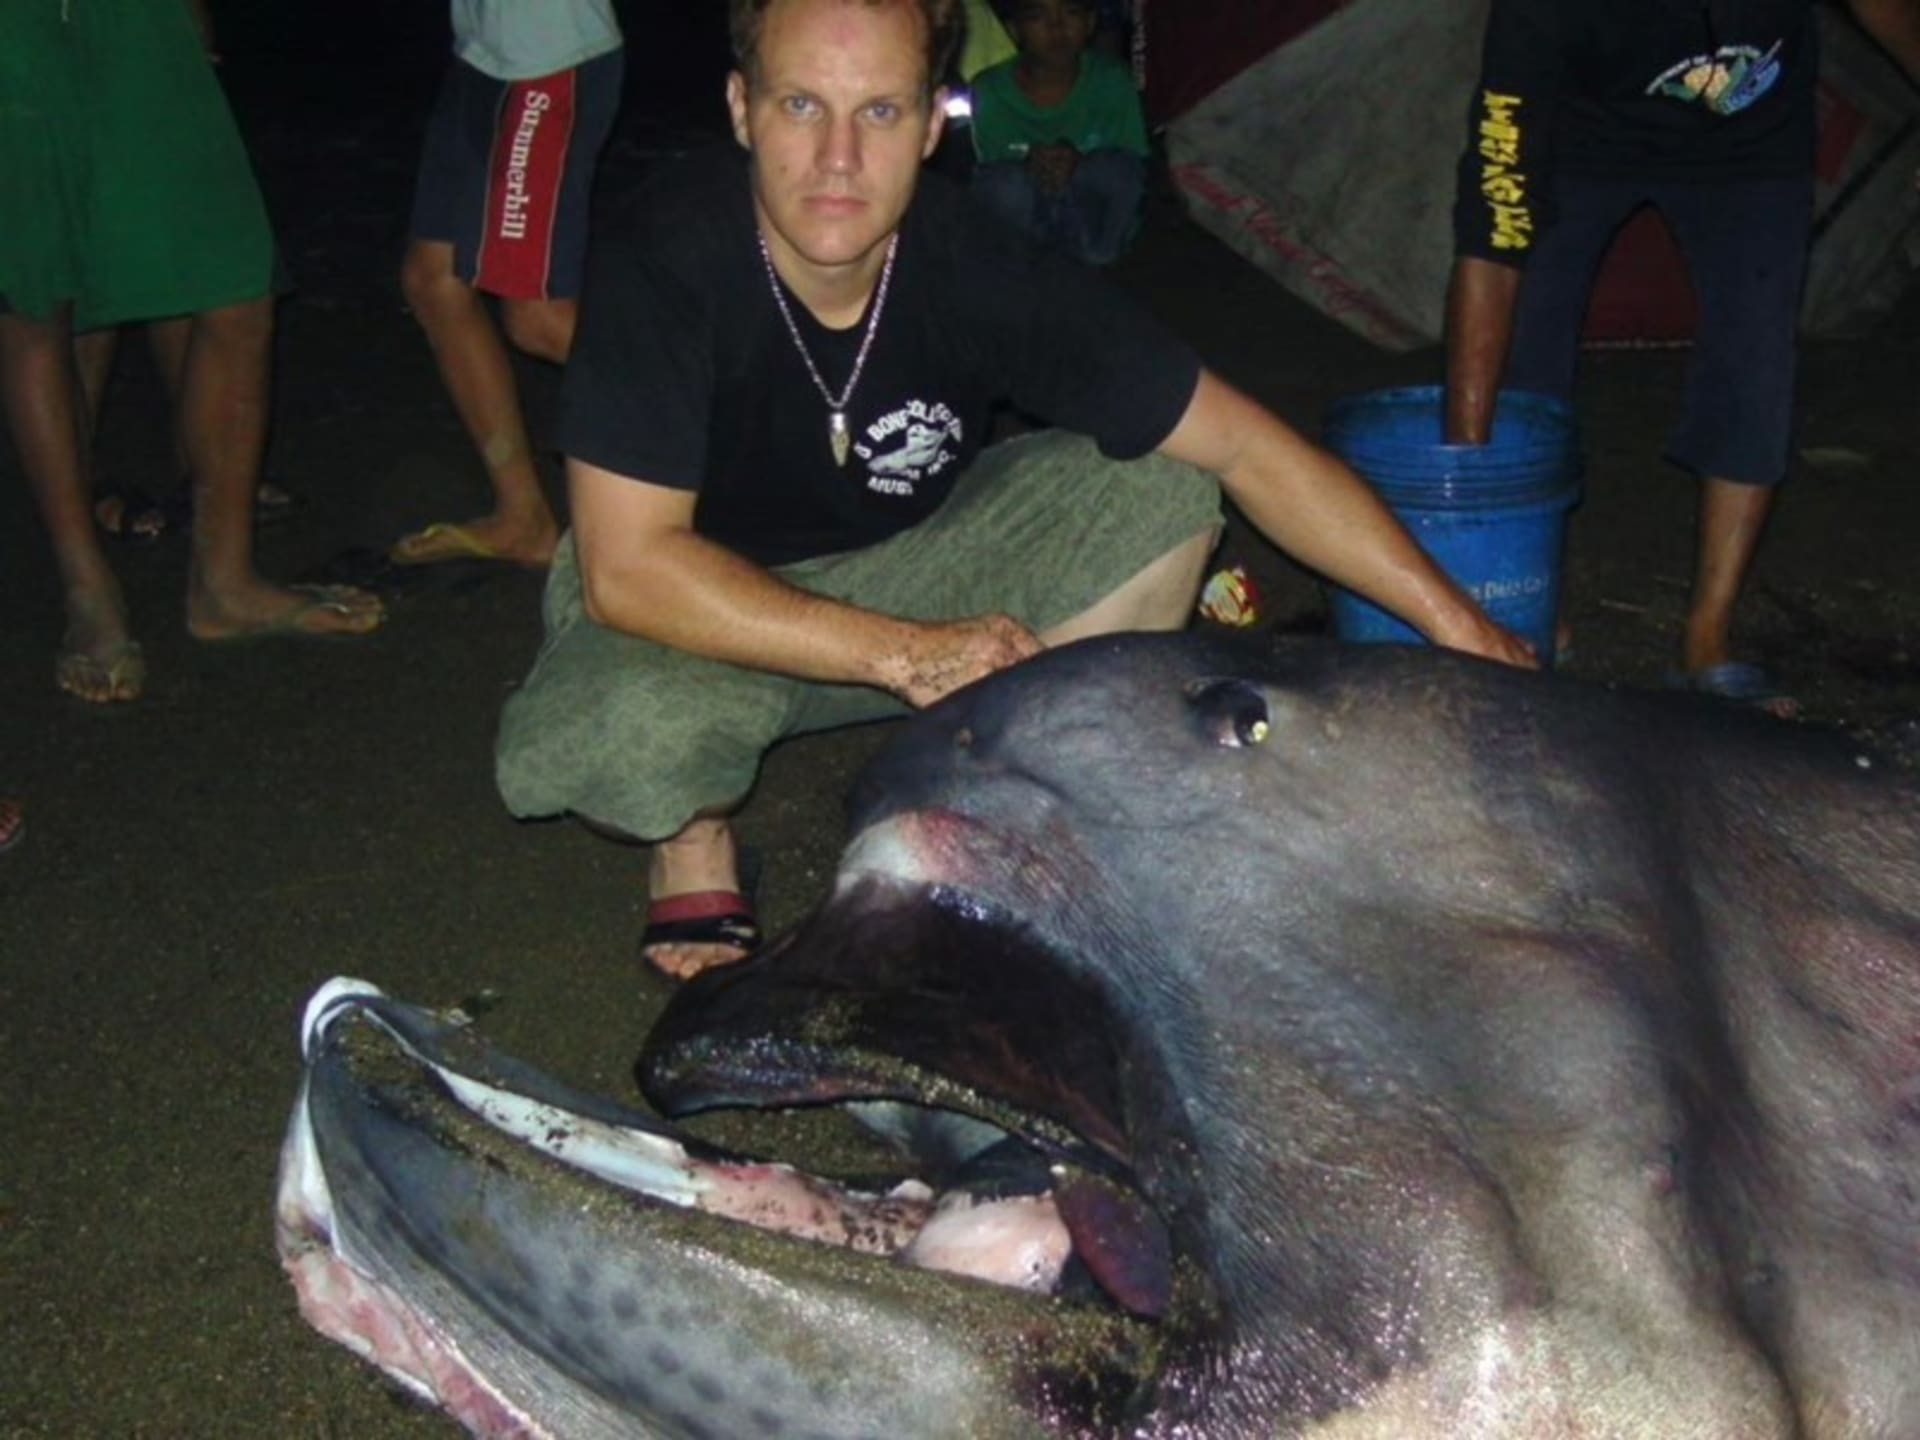 Žralok velkoústý nalezený na Filipínách s nálezcem